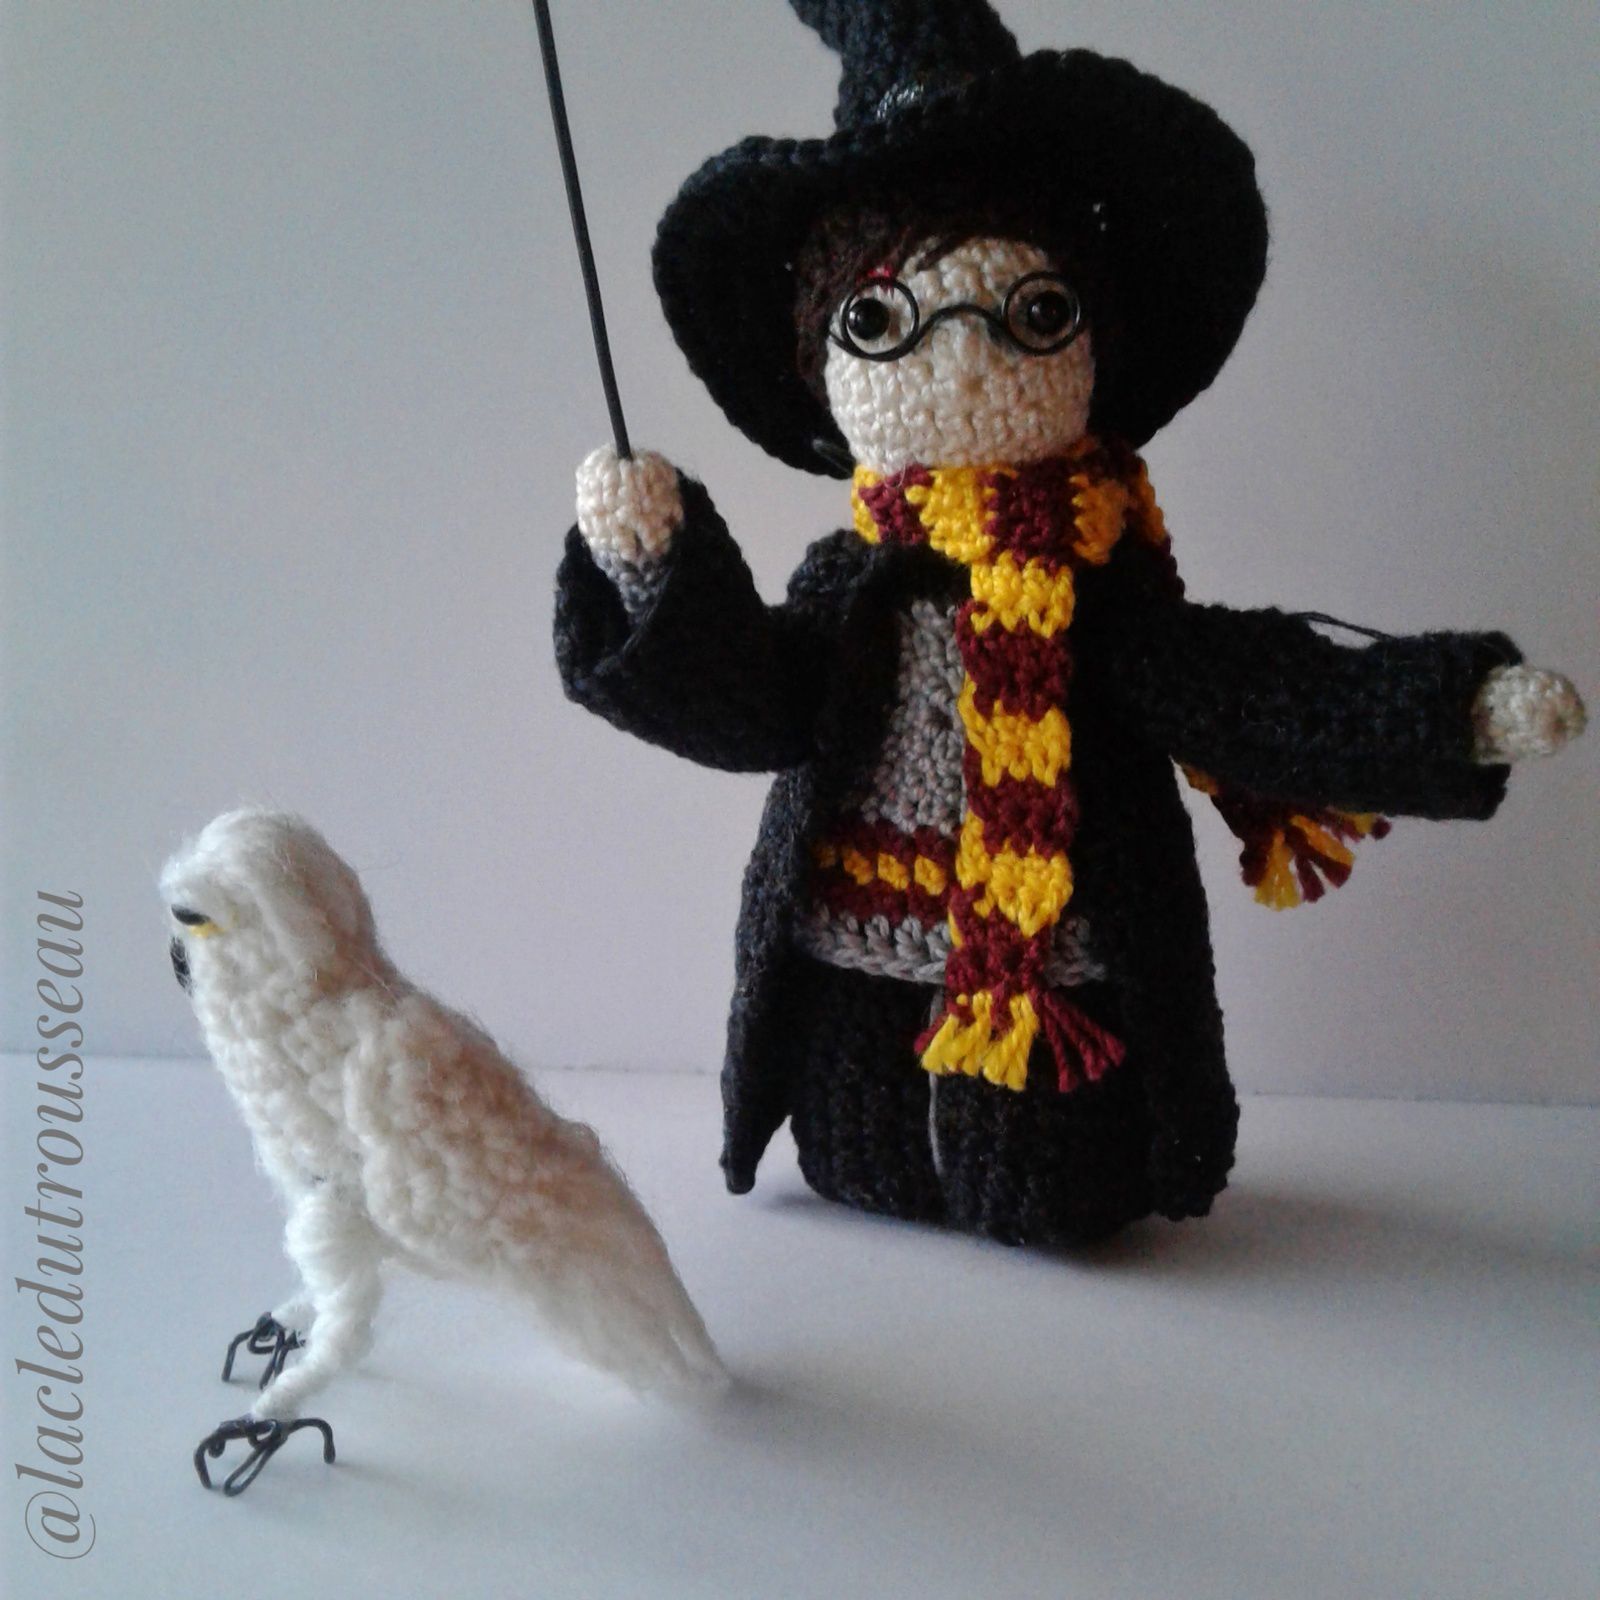 Harry Potter, Miniidole, Poudlard, amigurumi, crochet, crochet doll, Hedwige